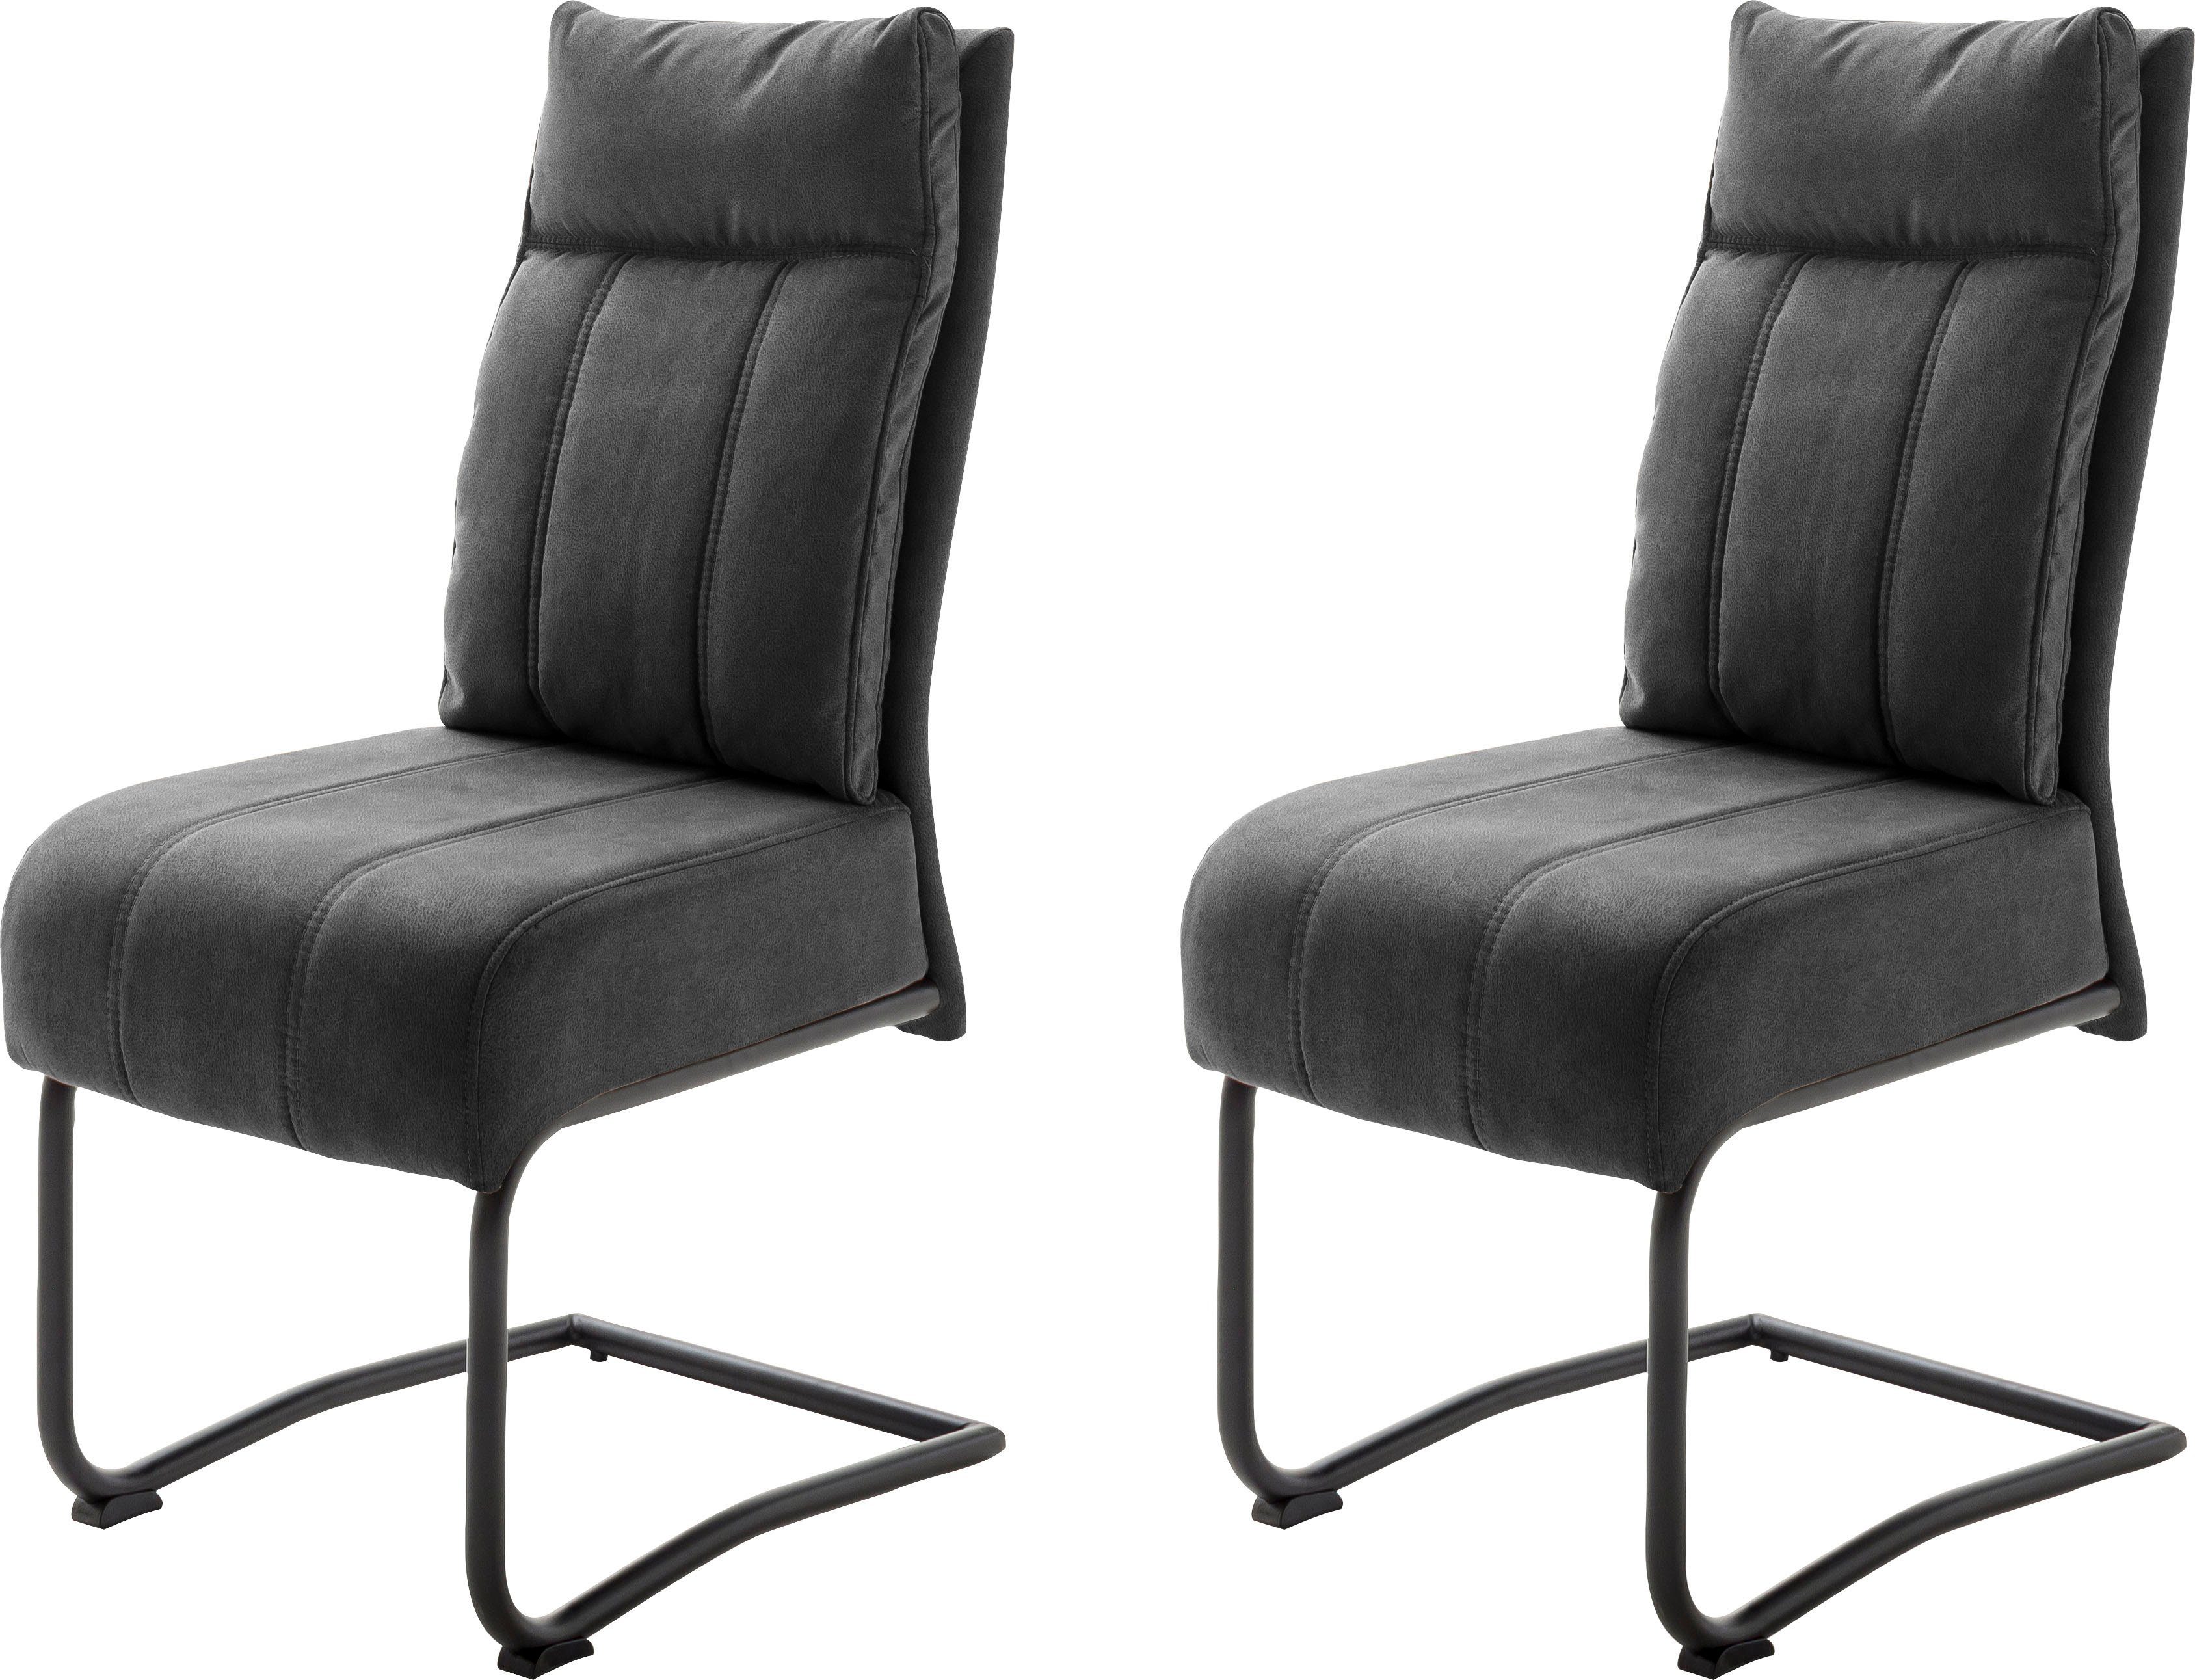 MCA furniture Stühle online kaufen | OTTO